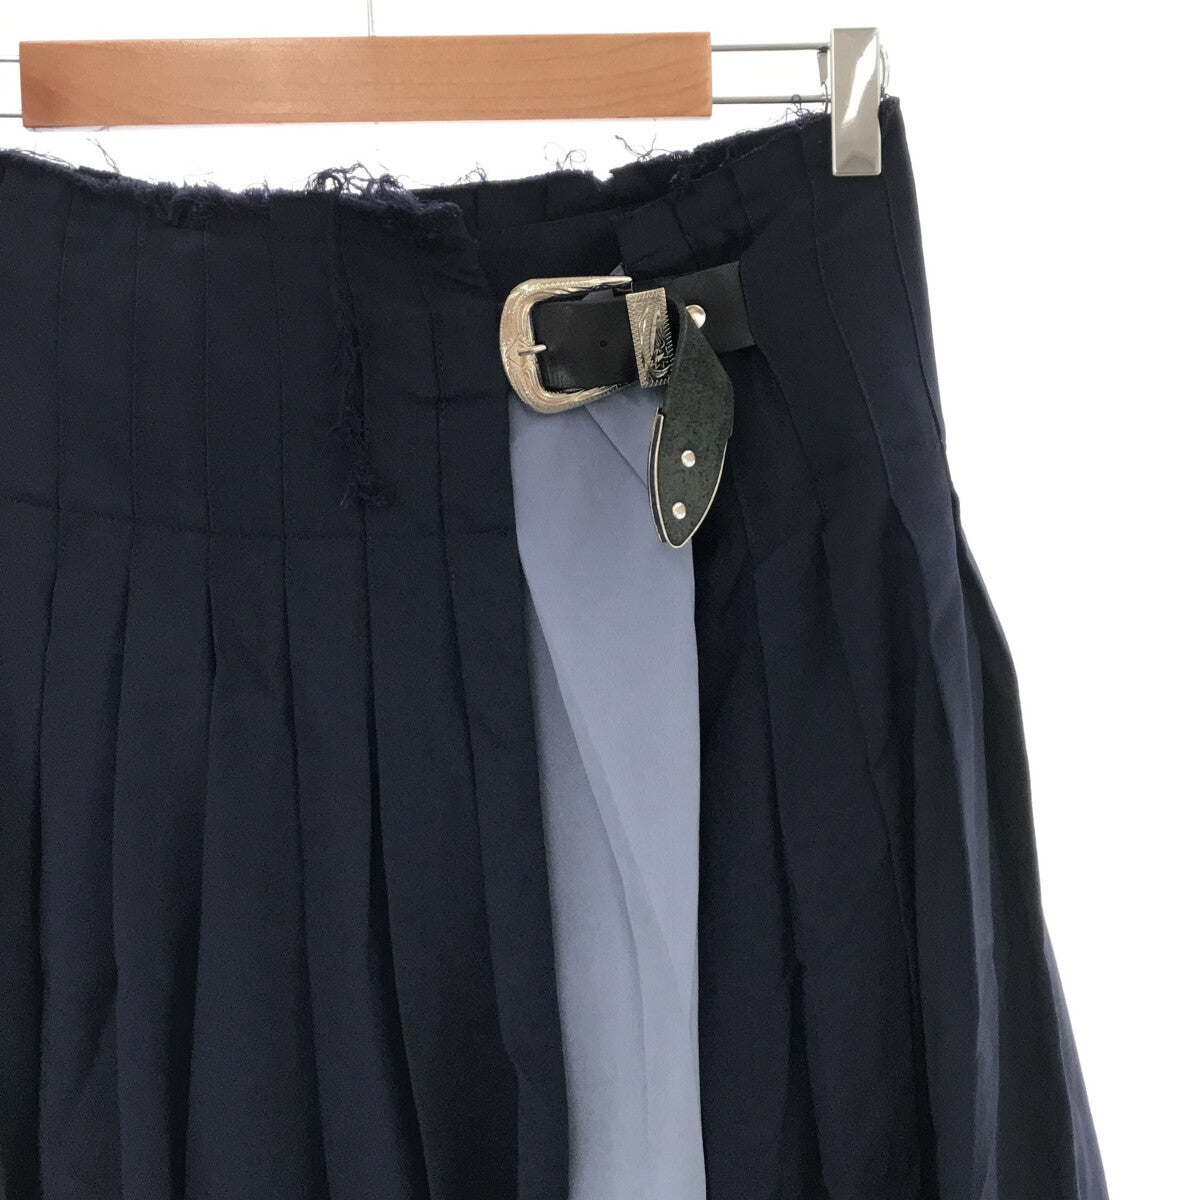 TOGA PULLA / トーガプルラ | Wool Pleated Skirt スカート | 36 | – KLD